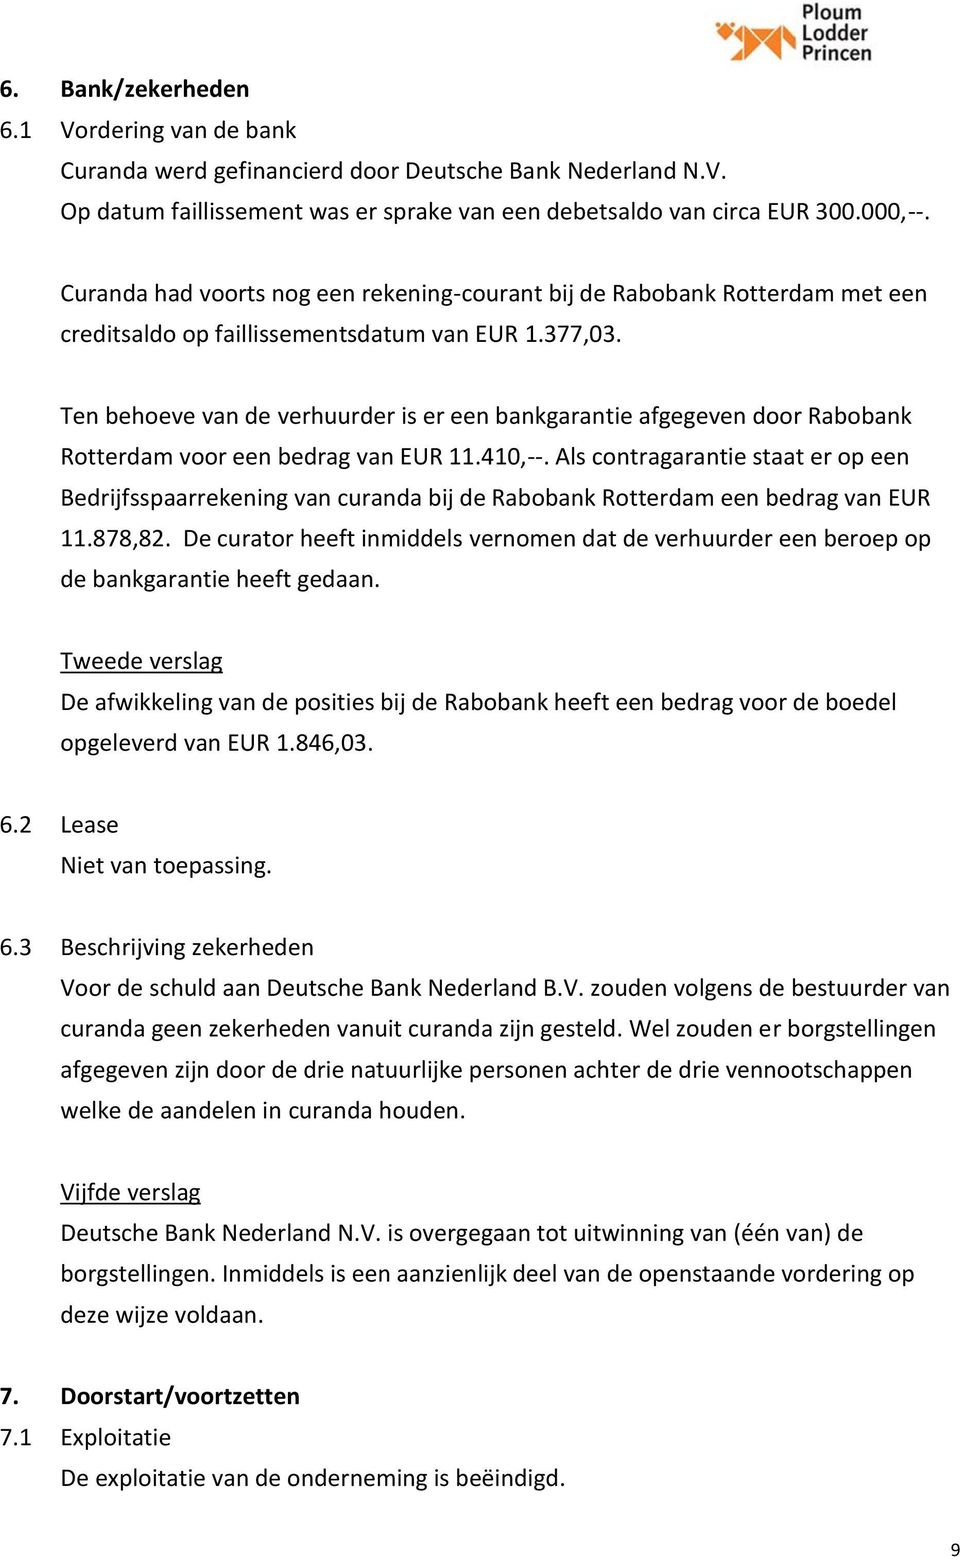 Ten behoeve van de verhuurder is er een bankgarantie afgegeven door Rabobank Rotterdam voor een bedrag van EUR 11.410,--.